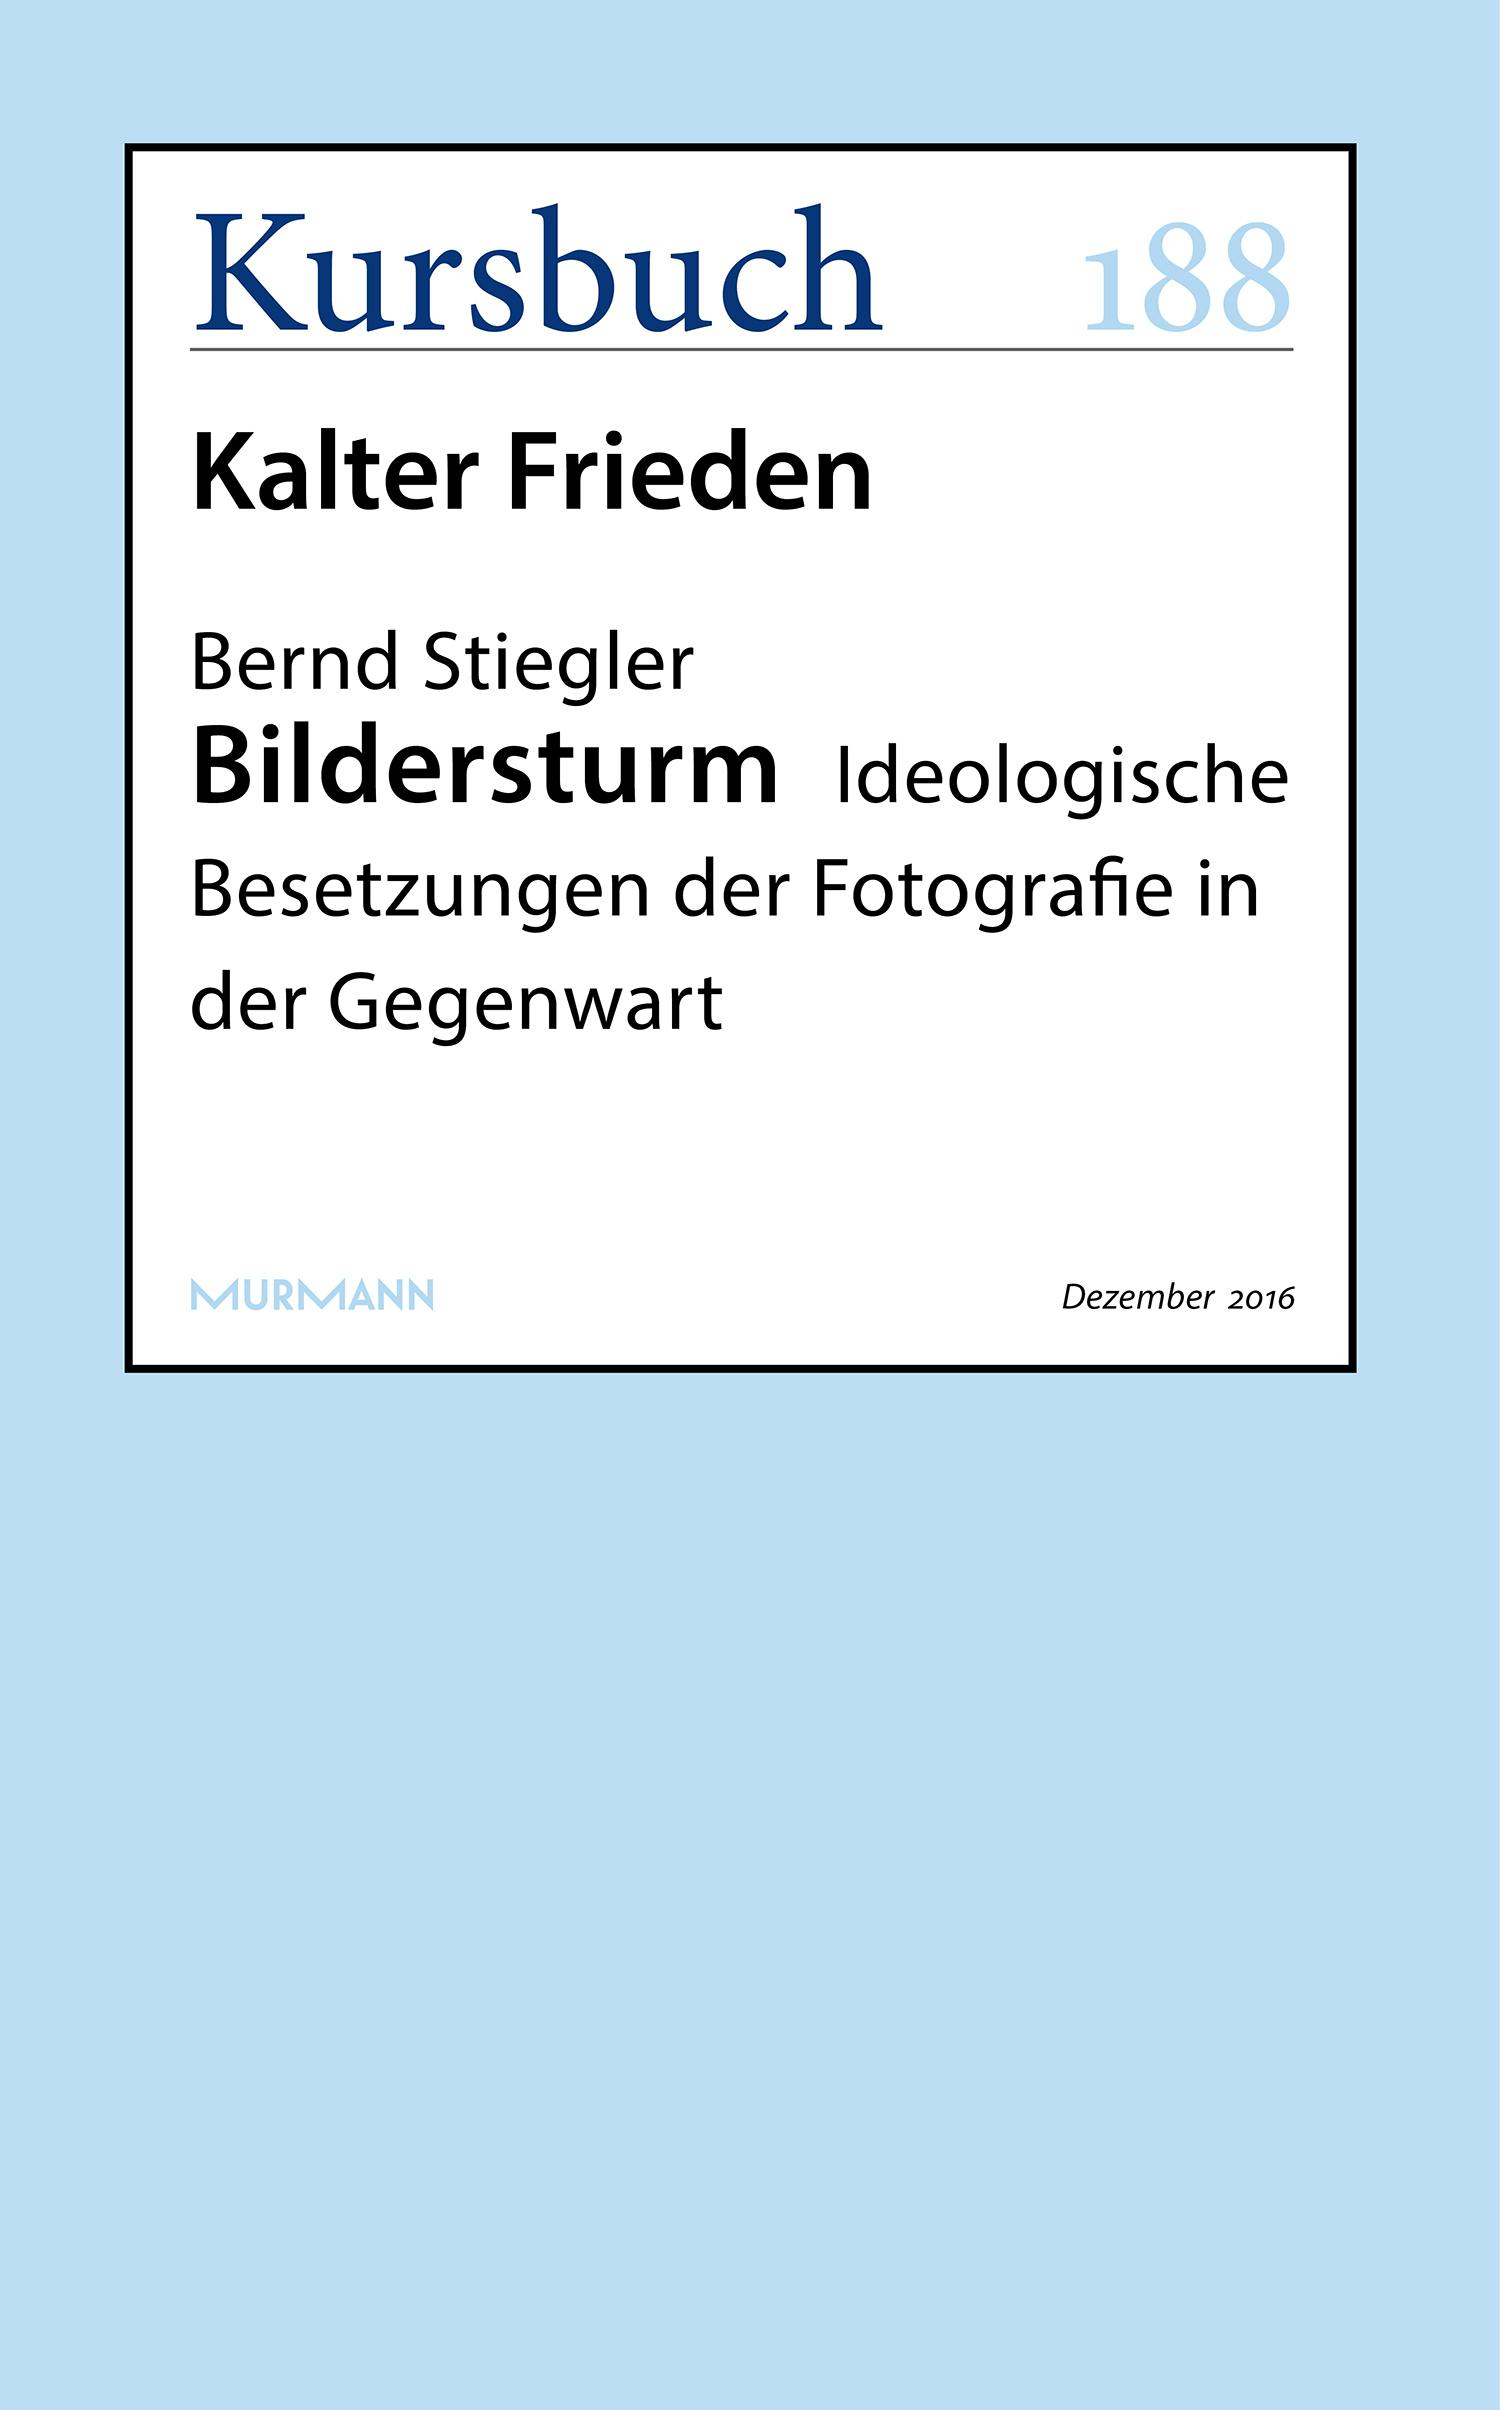 Bildersturm: Ideologische Besetzungen der Fotografie in der Gegenwart - Bernd Stiegler